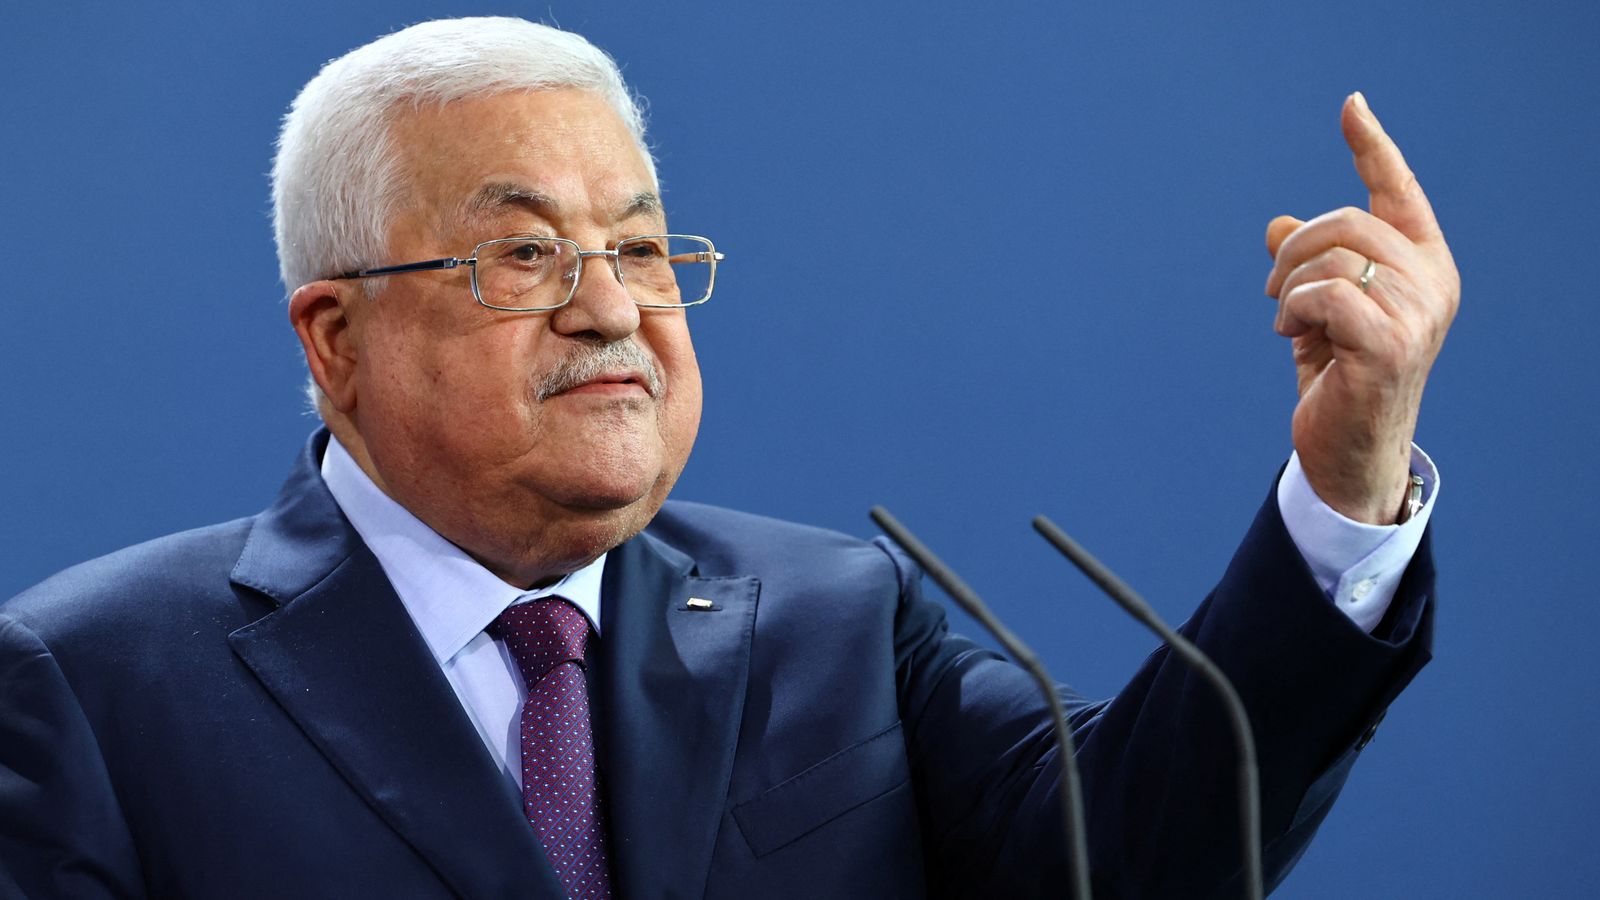 Le président palestinien Mahmoud Abbas suscite la colère après avoir accusé Israël de “50 holocaustes” lors d’une conférence de presse en Allemagne |  Nouvelles du monde